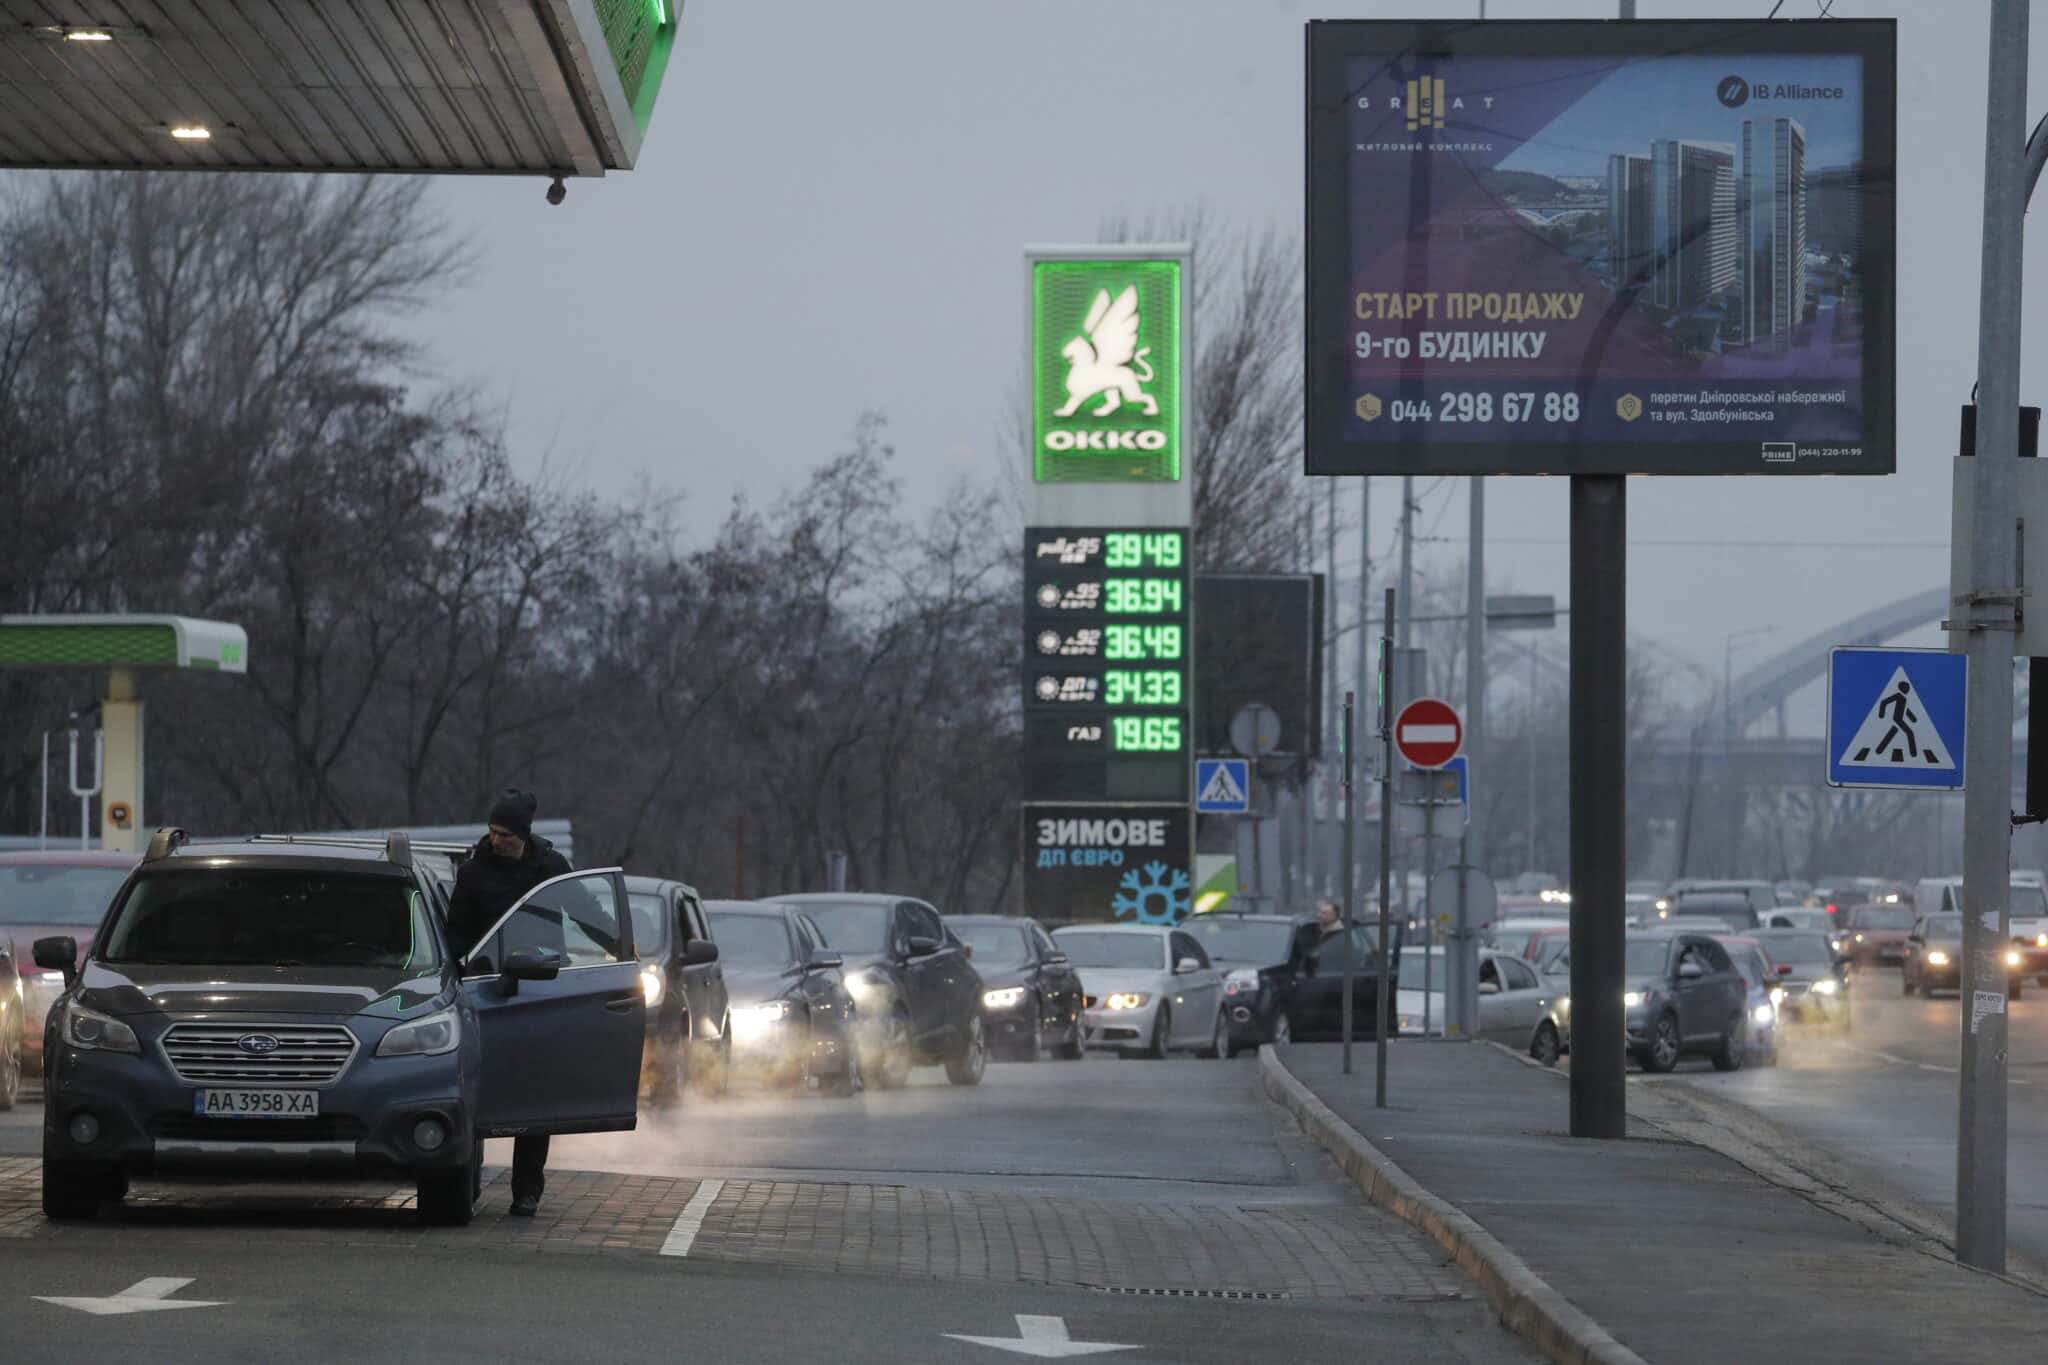 Colas en una gasolinera en Kiev (Ucrania) ante la invasión por parte de Rusia